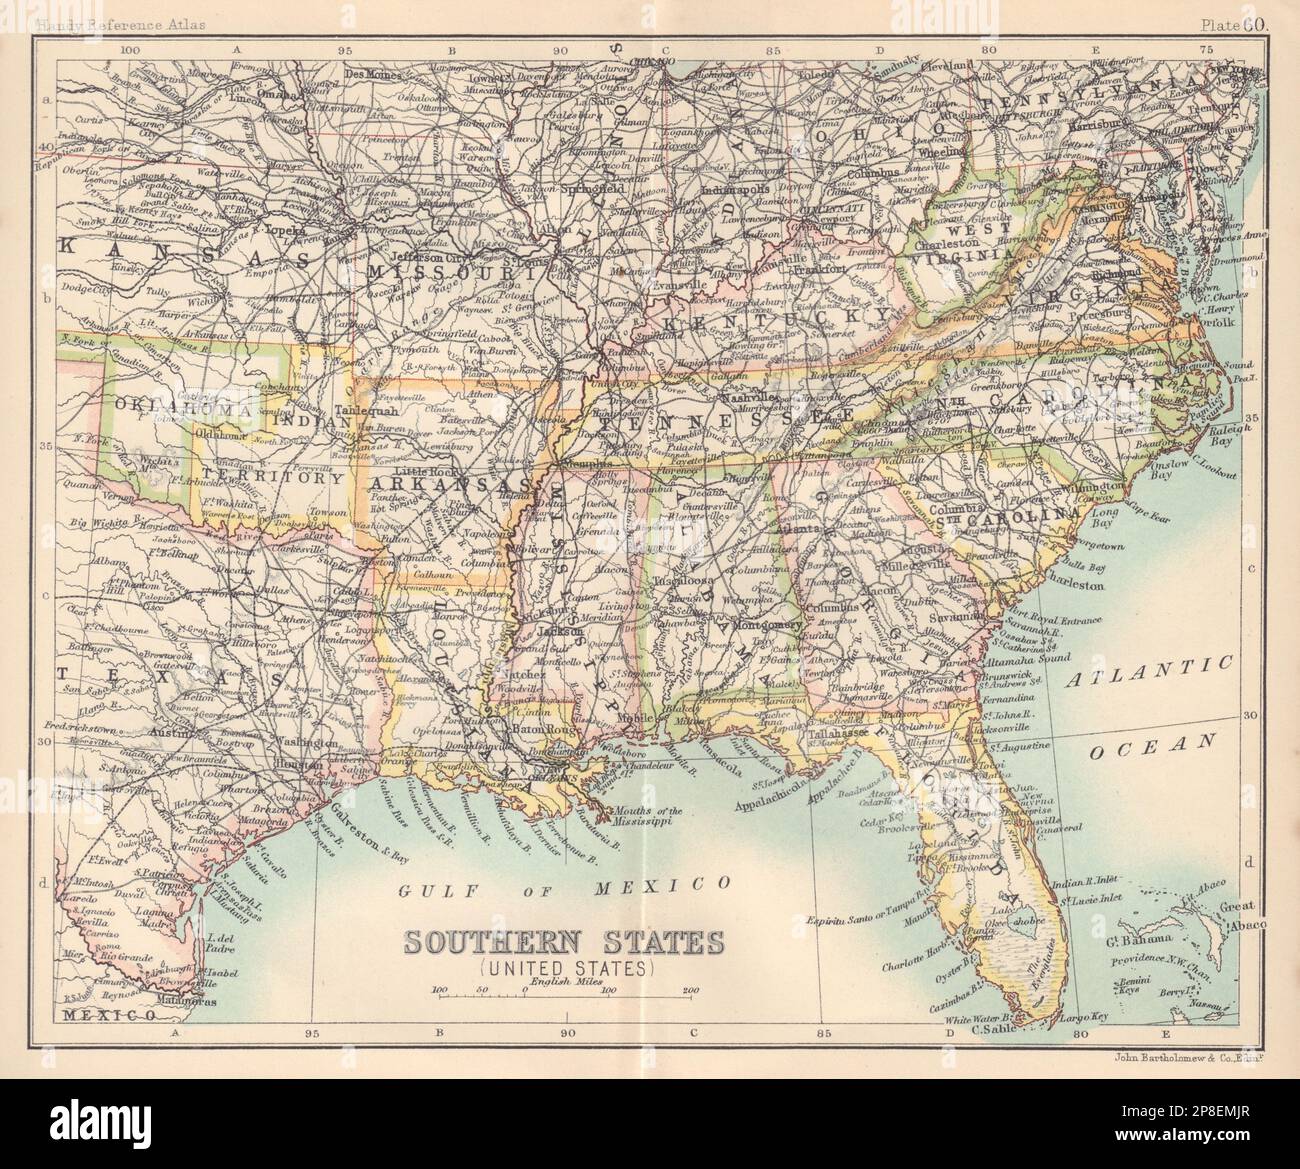 Stati del sud (Stati Uniti). Sud profondo. Territorio indiano. Mappa degli Stati Uniti 1898 Foto Stock